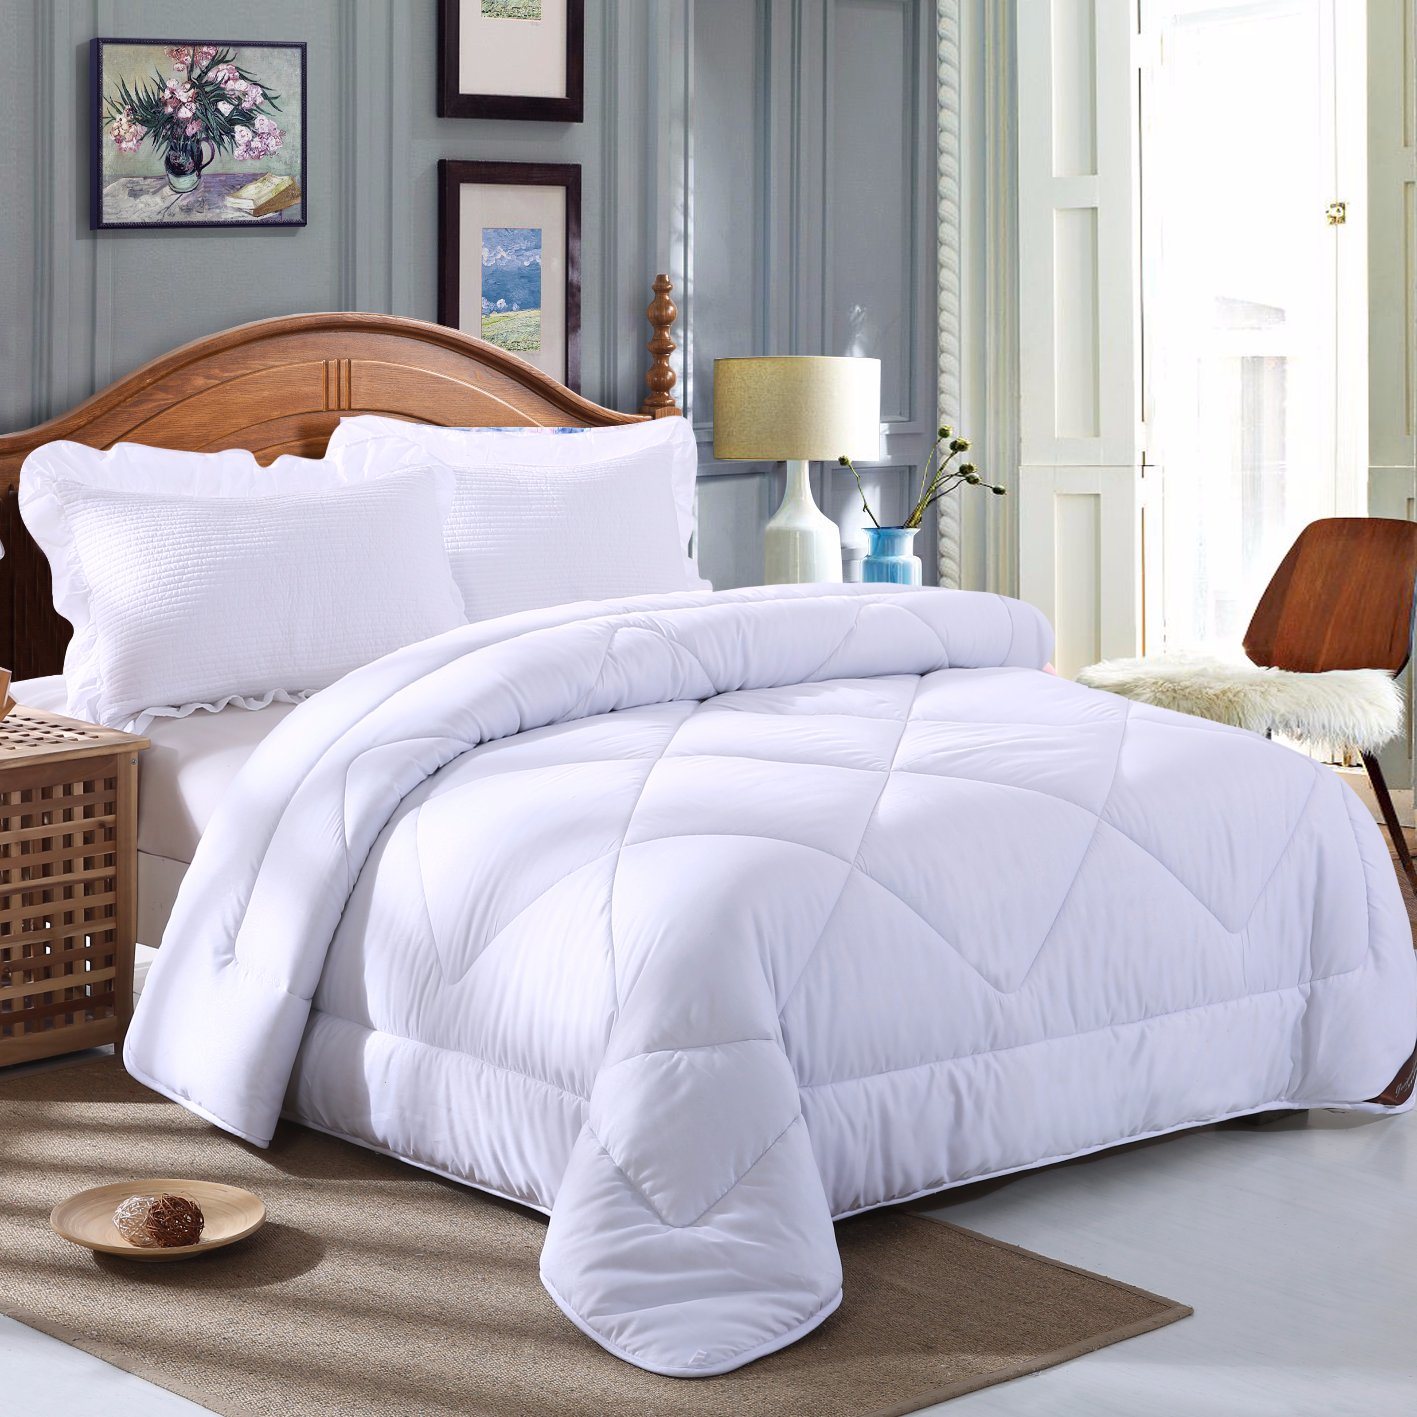 Home Living Polyester Warmth King Down Alternative Comforter Duvet Insert